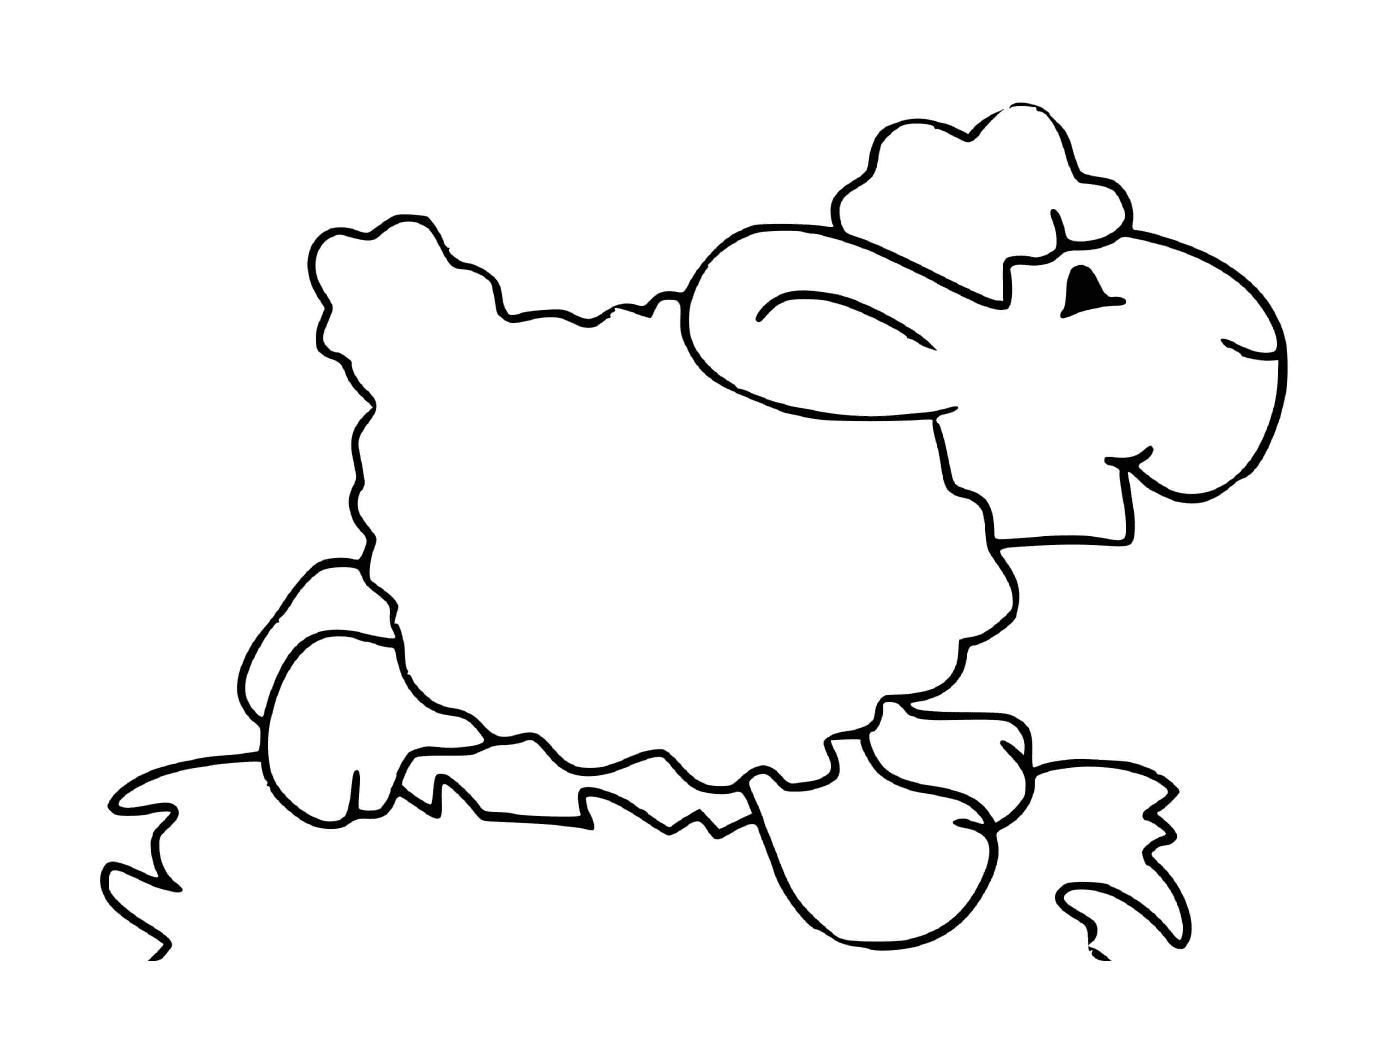  Pecore con corna in prato 